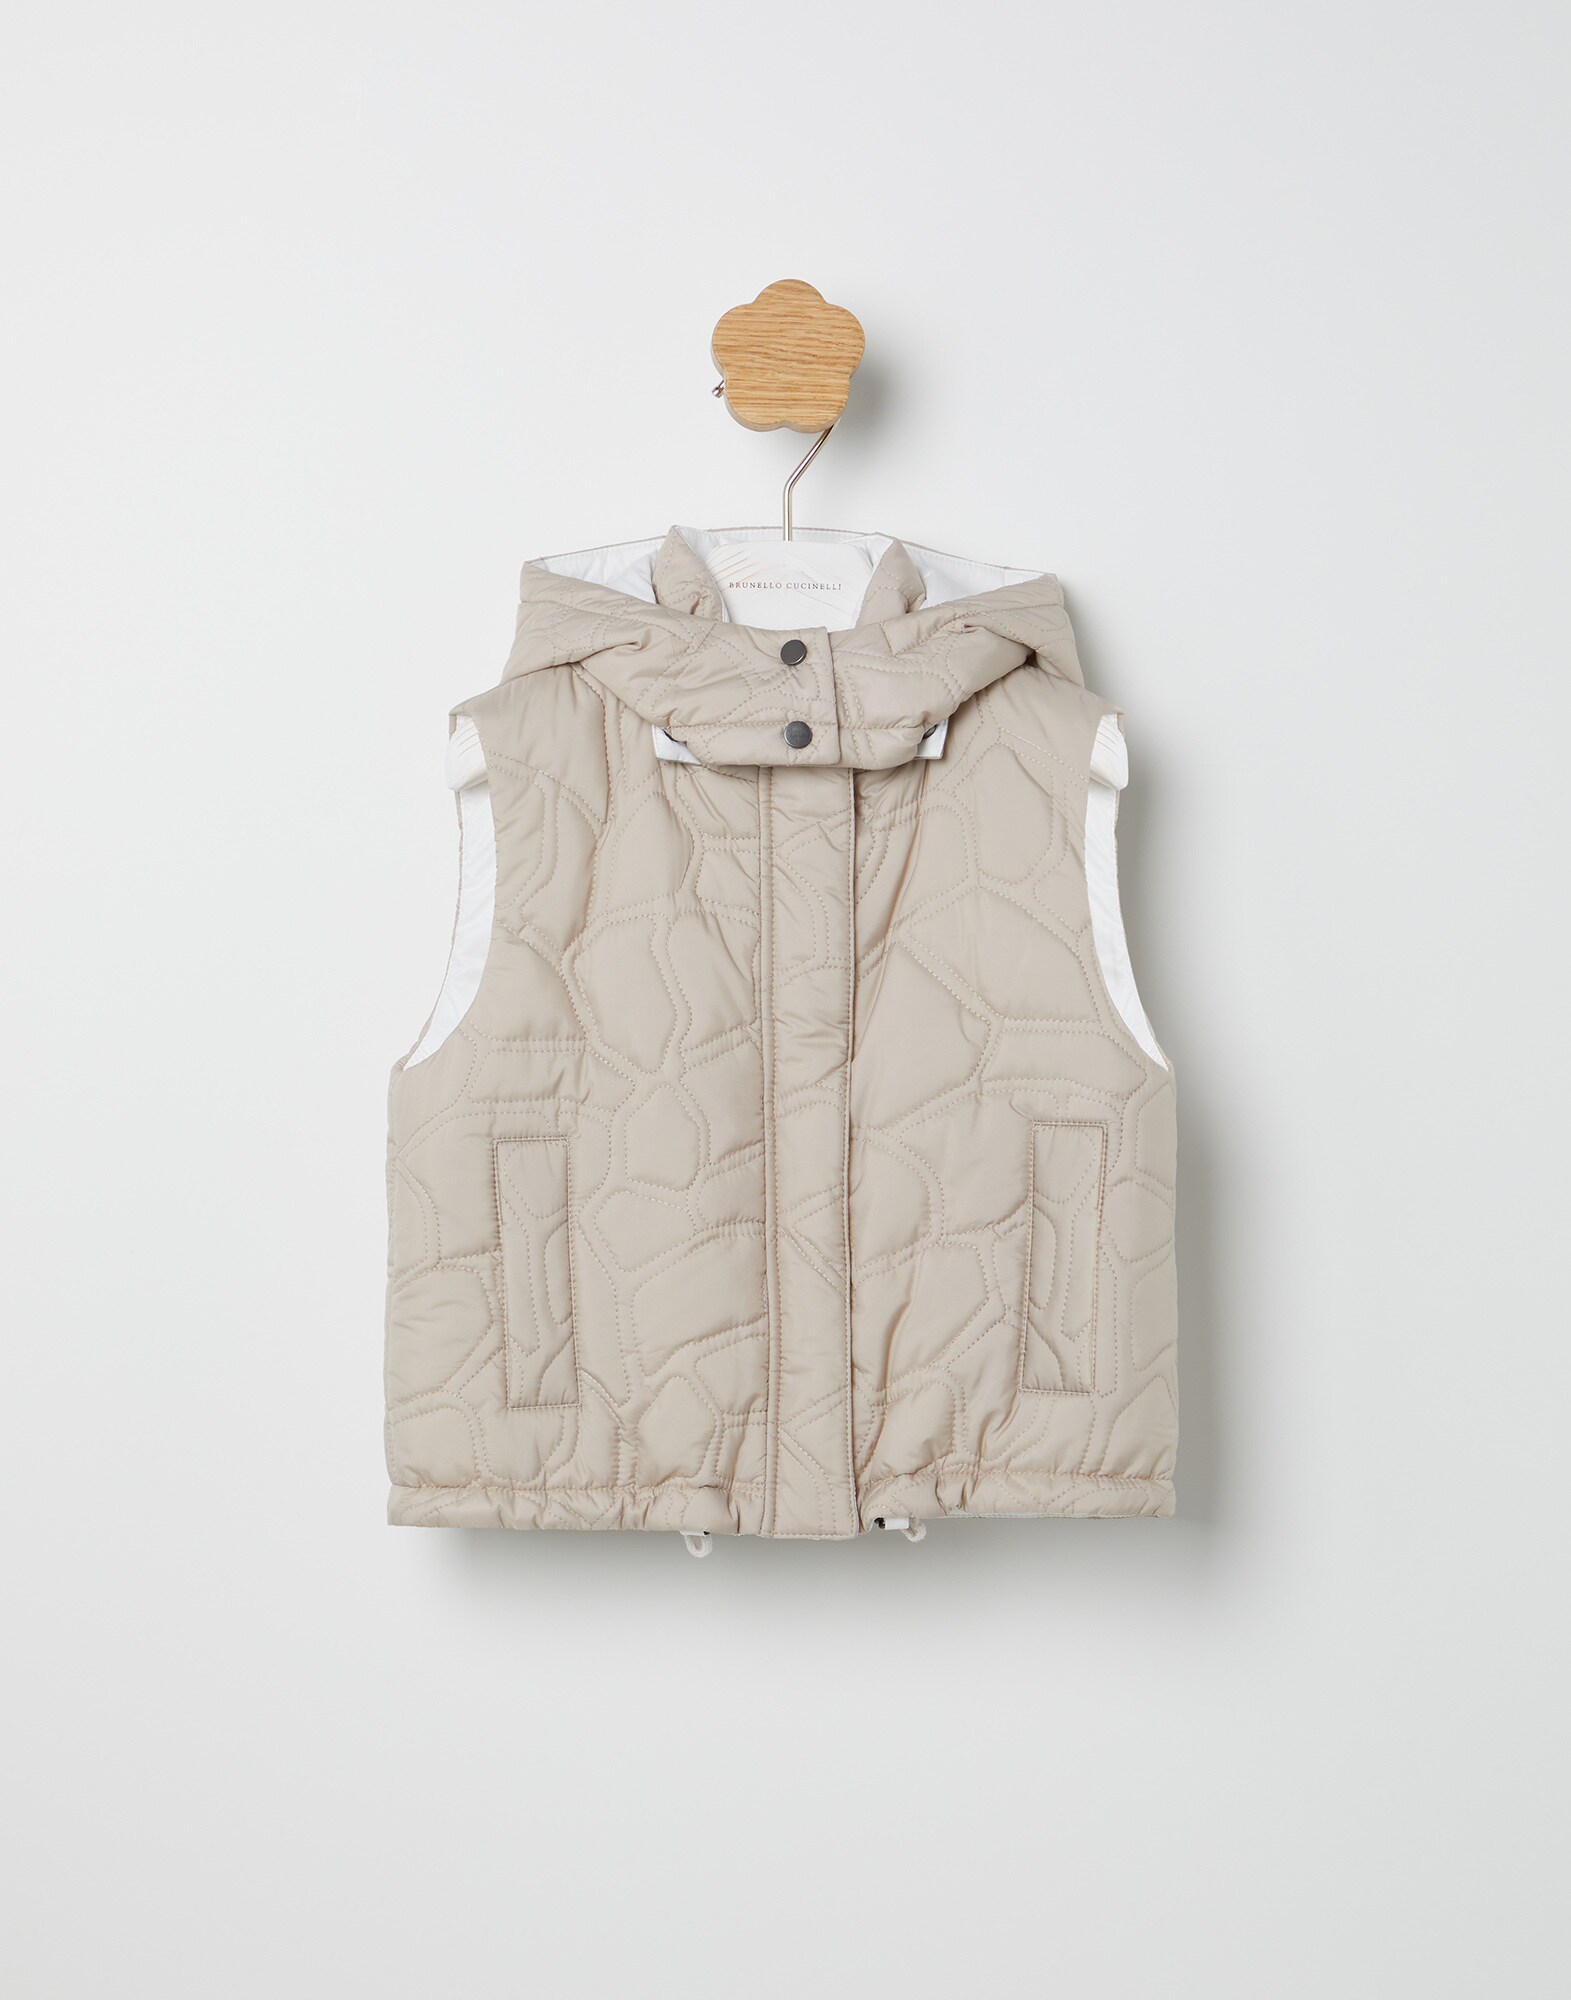 Outerwear vest